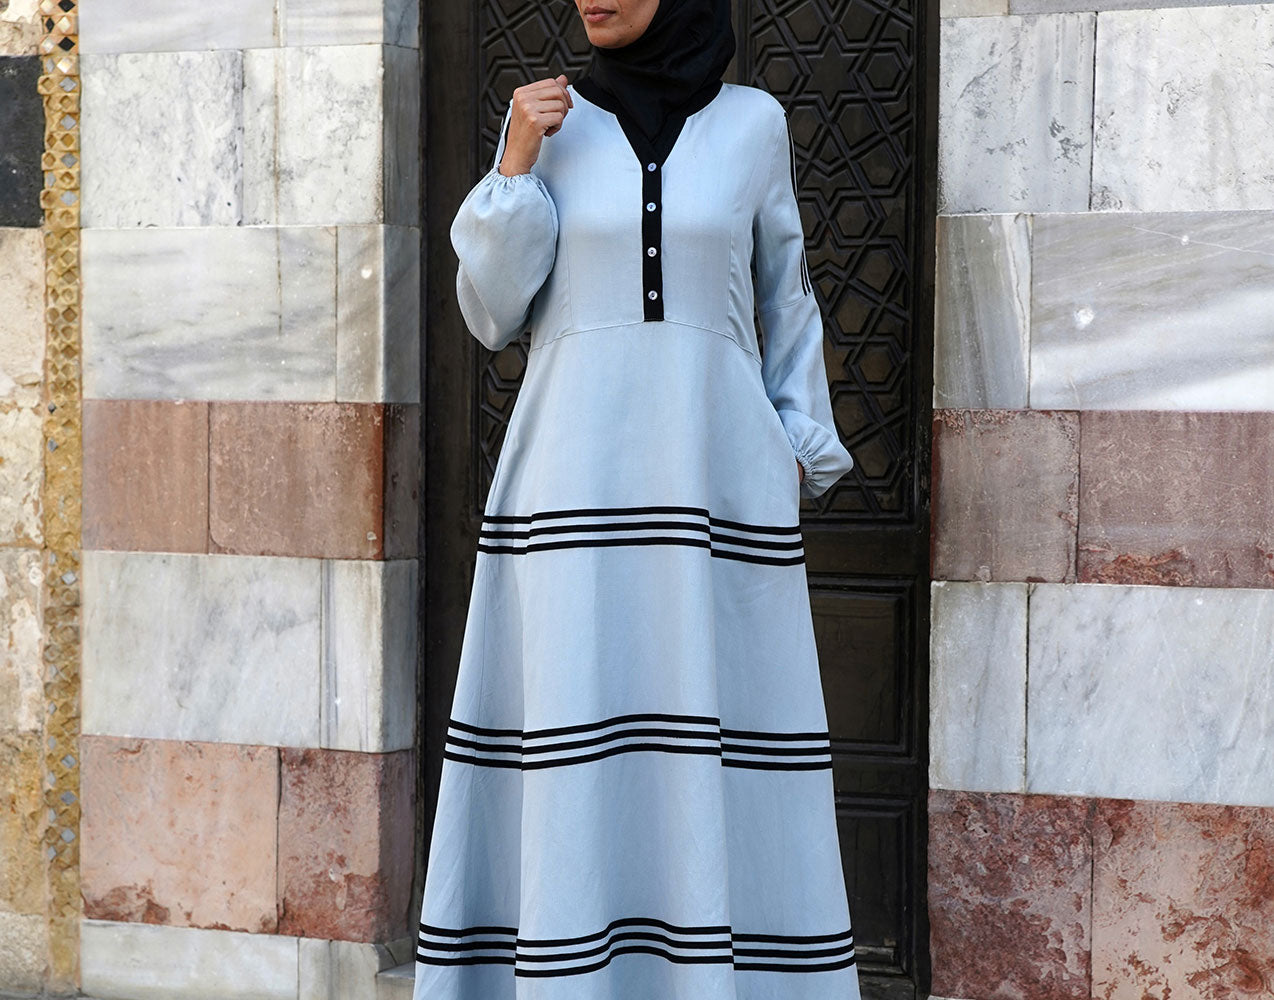 Modest Islamic Clothing Black, Modest Fashion Clothing